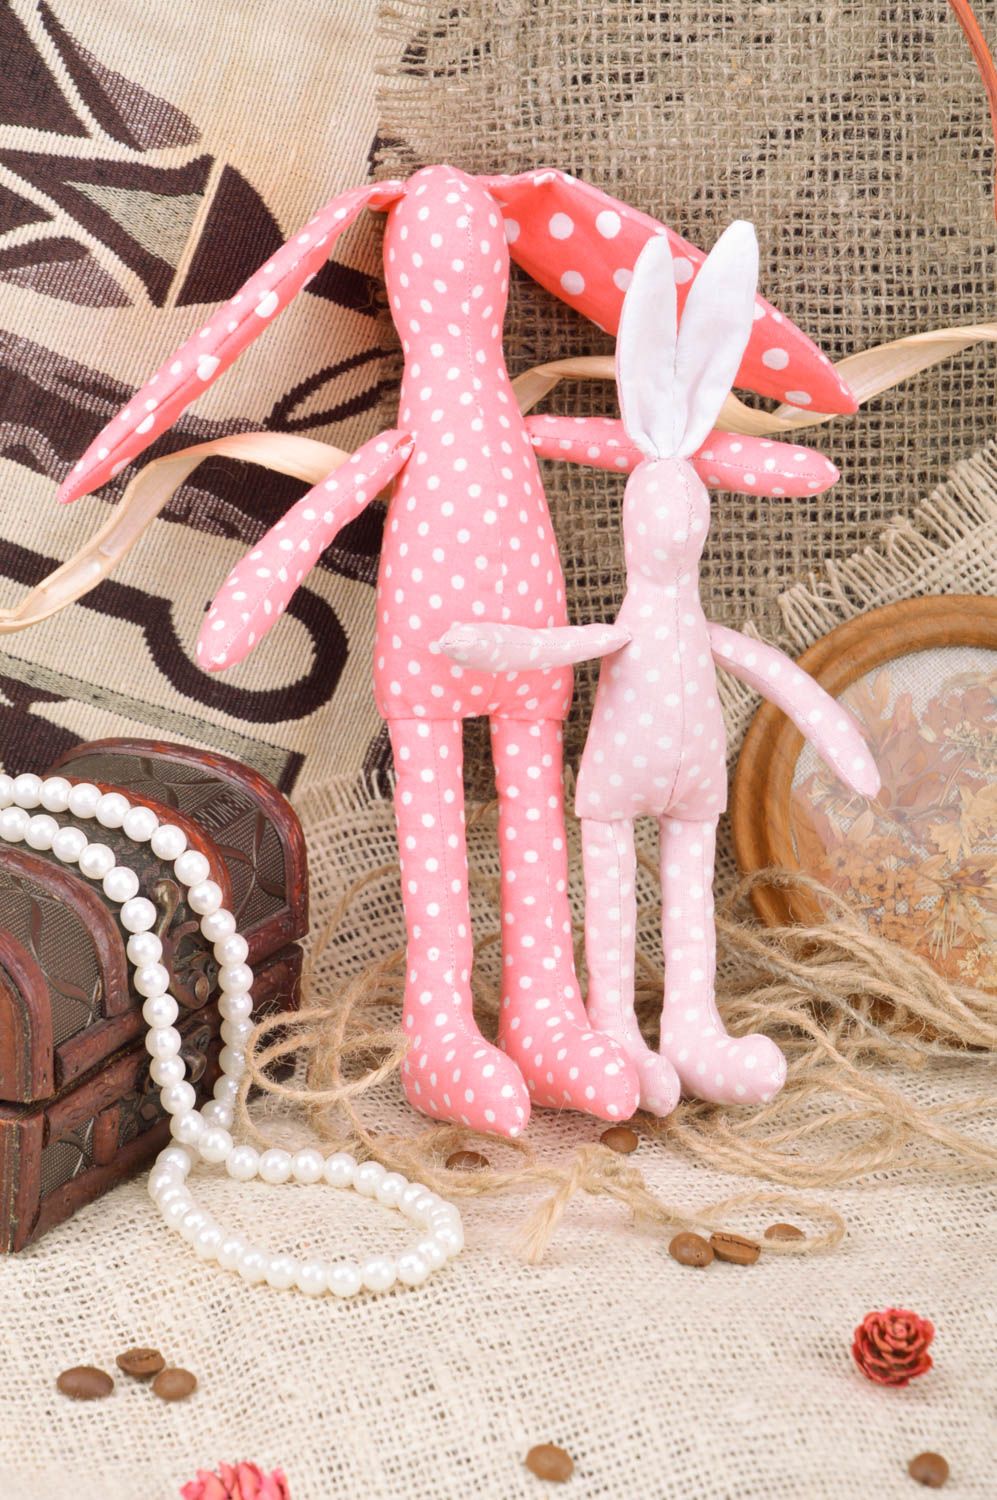 Набор тканевых игрушек зайцы 2 штуки из хлопка ручной работы розовые в горошек фото 1